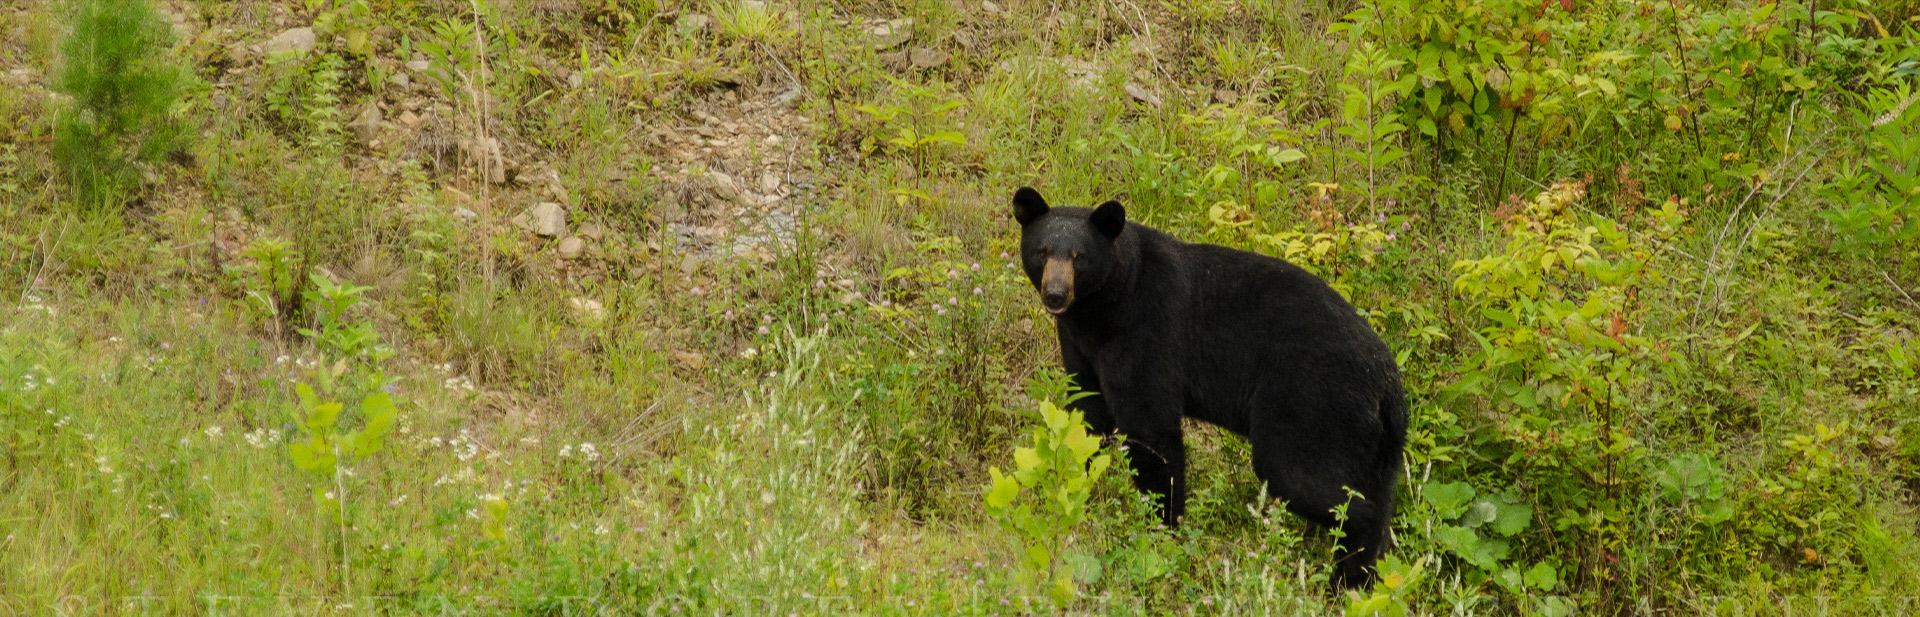 Black Bear in field